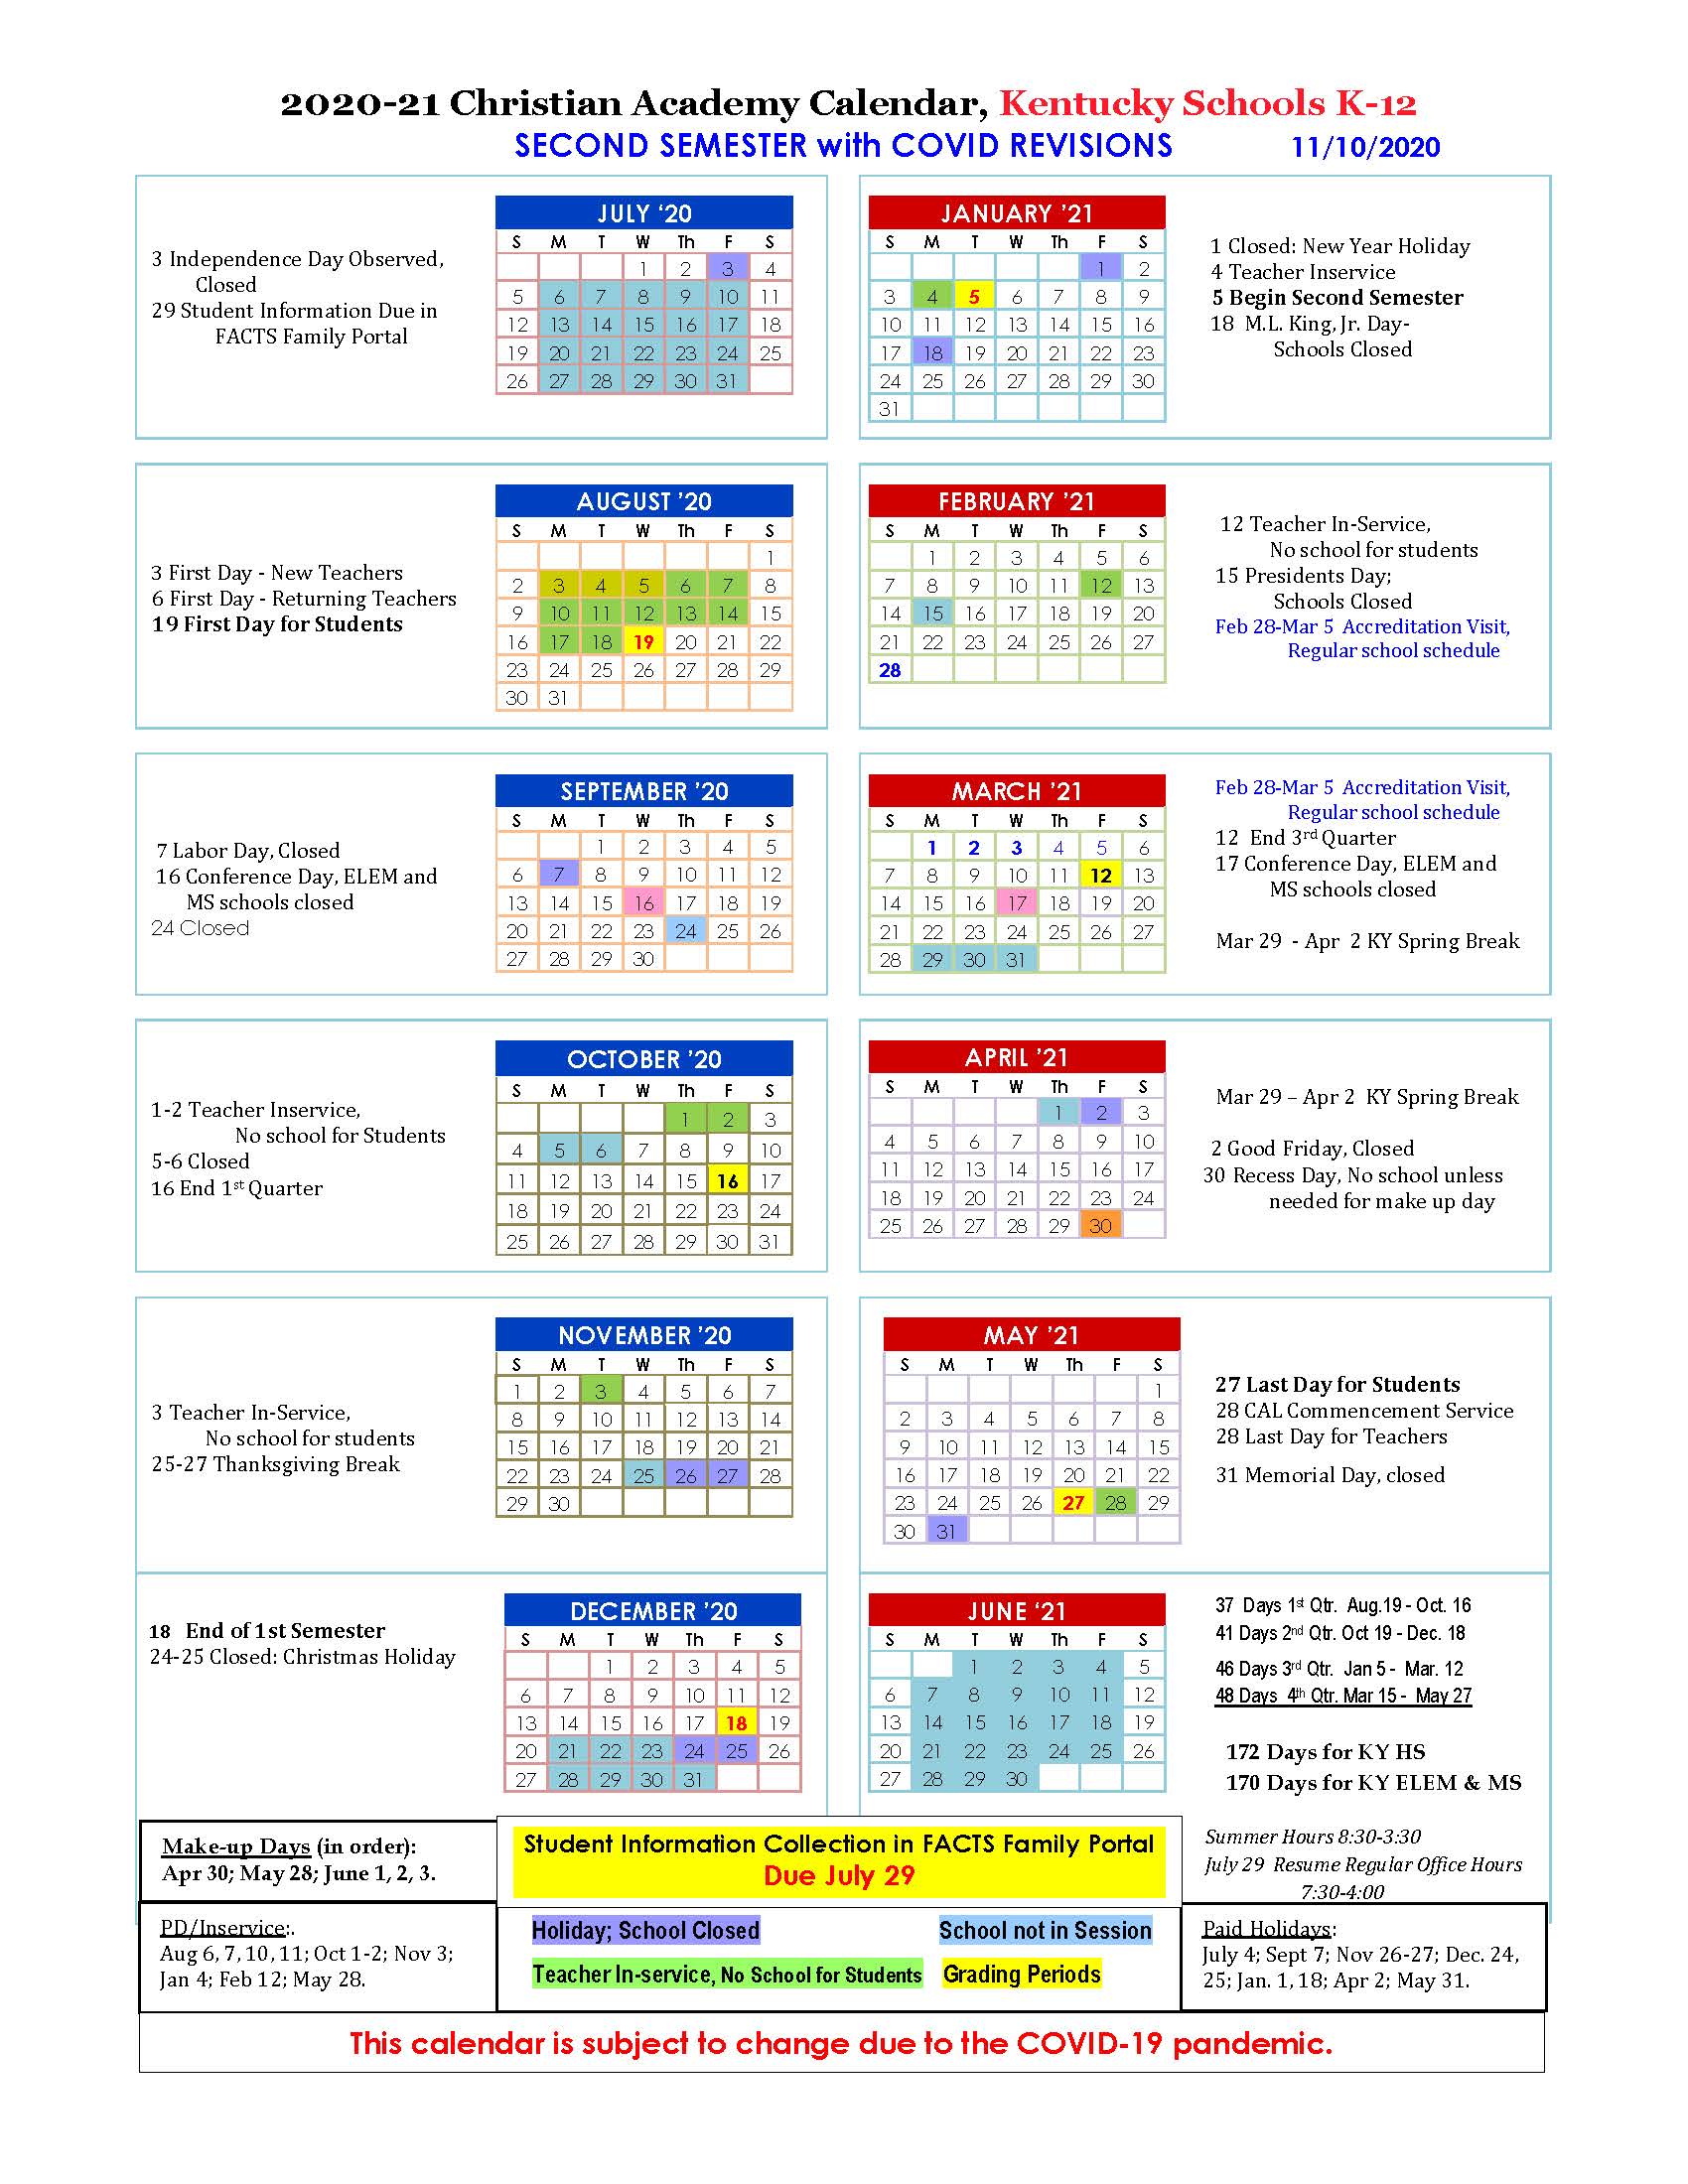 Plnu Academic Calendar Customize And Print